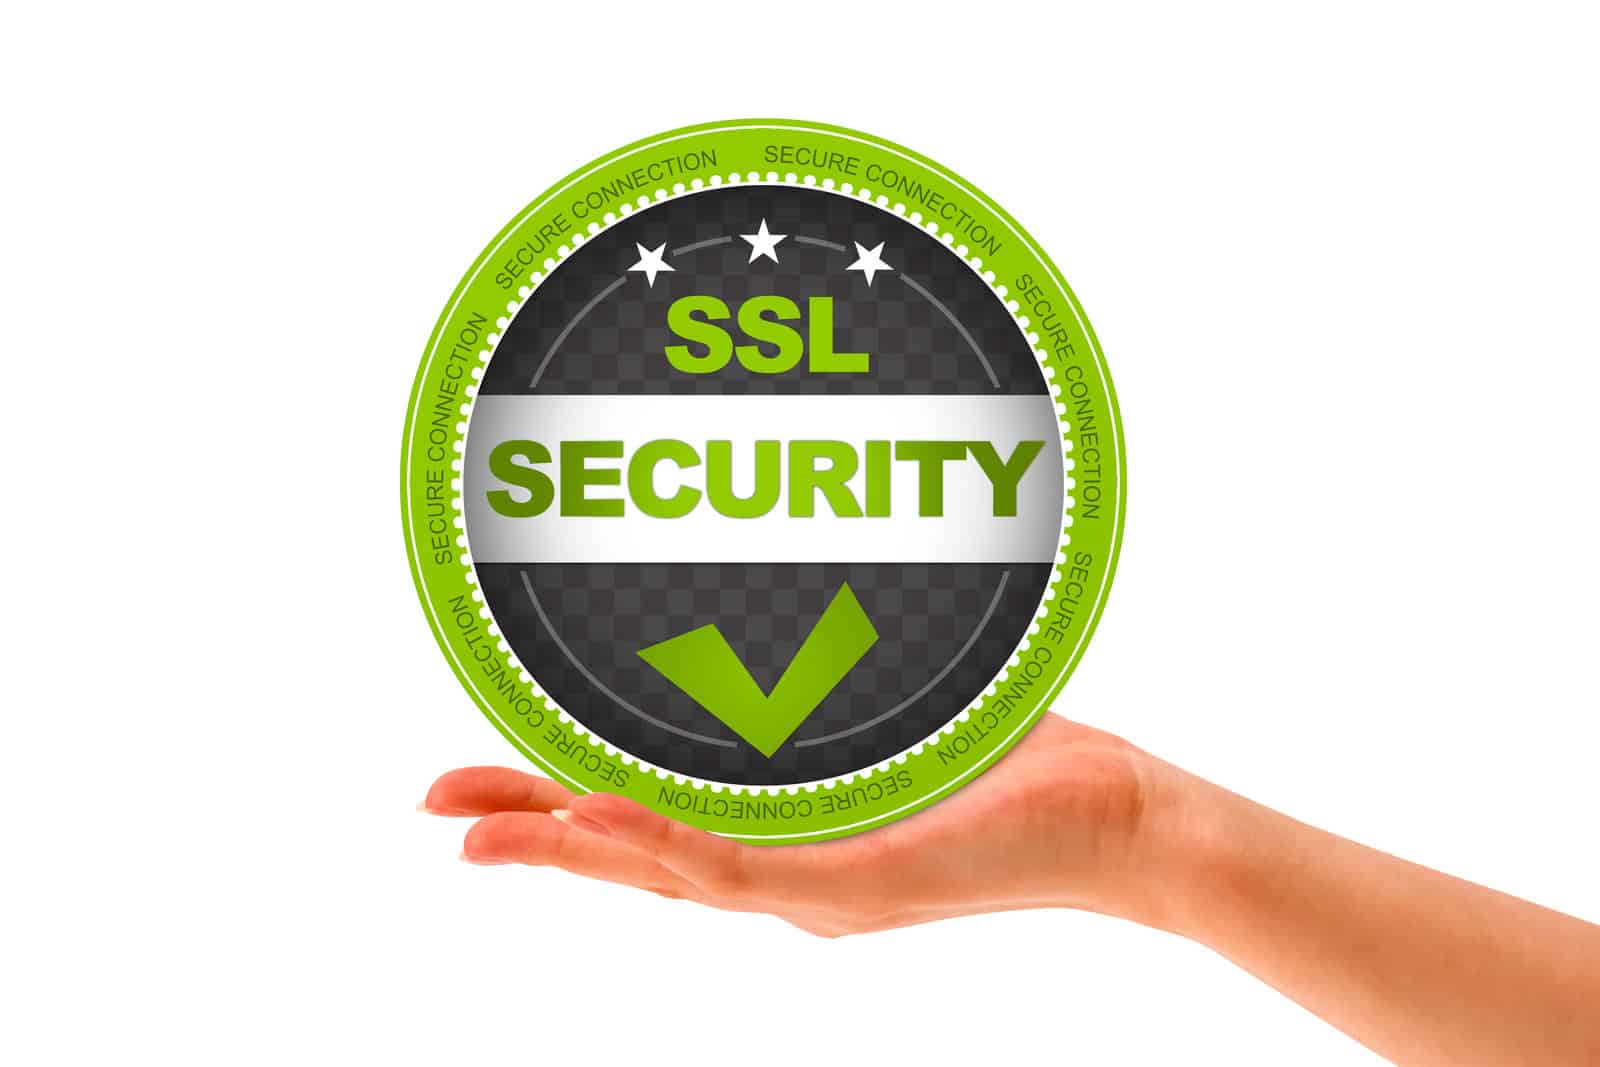 Benefits Of Having An SSL Certificate